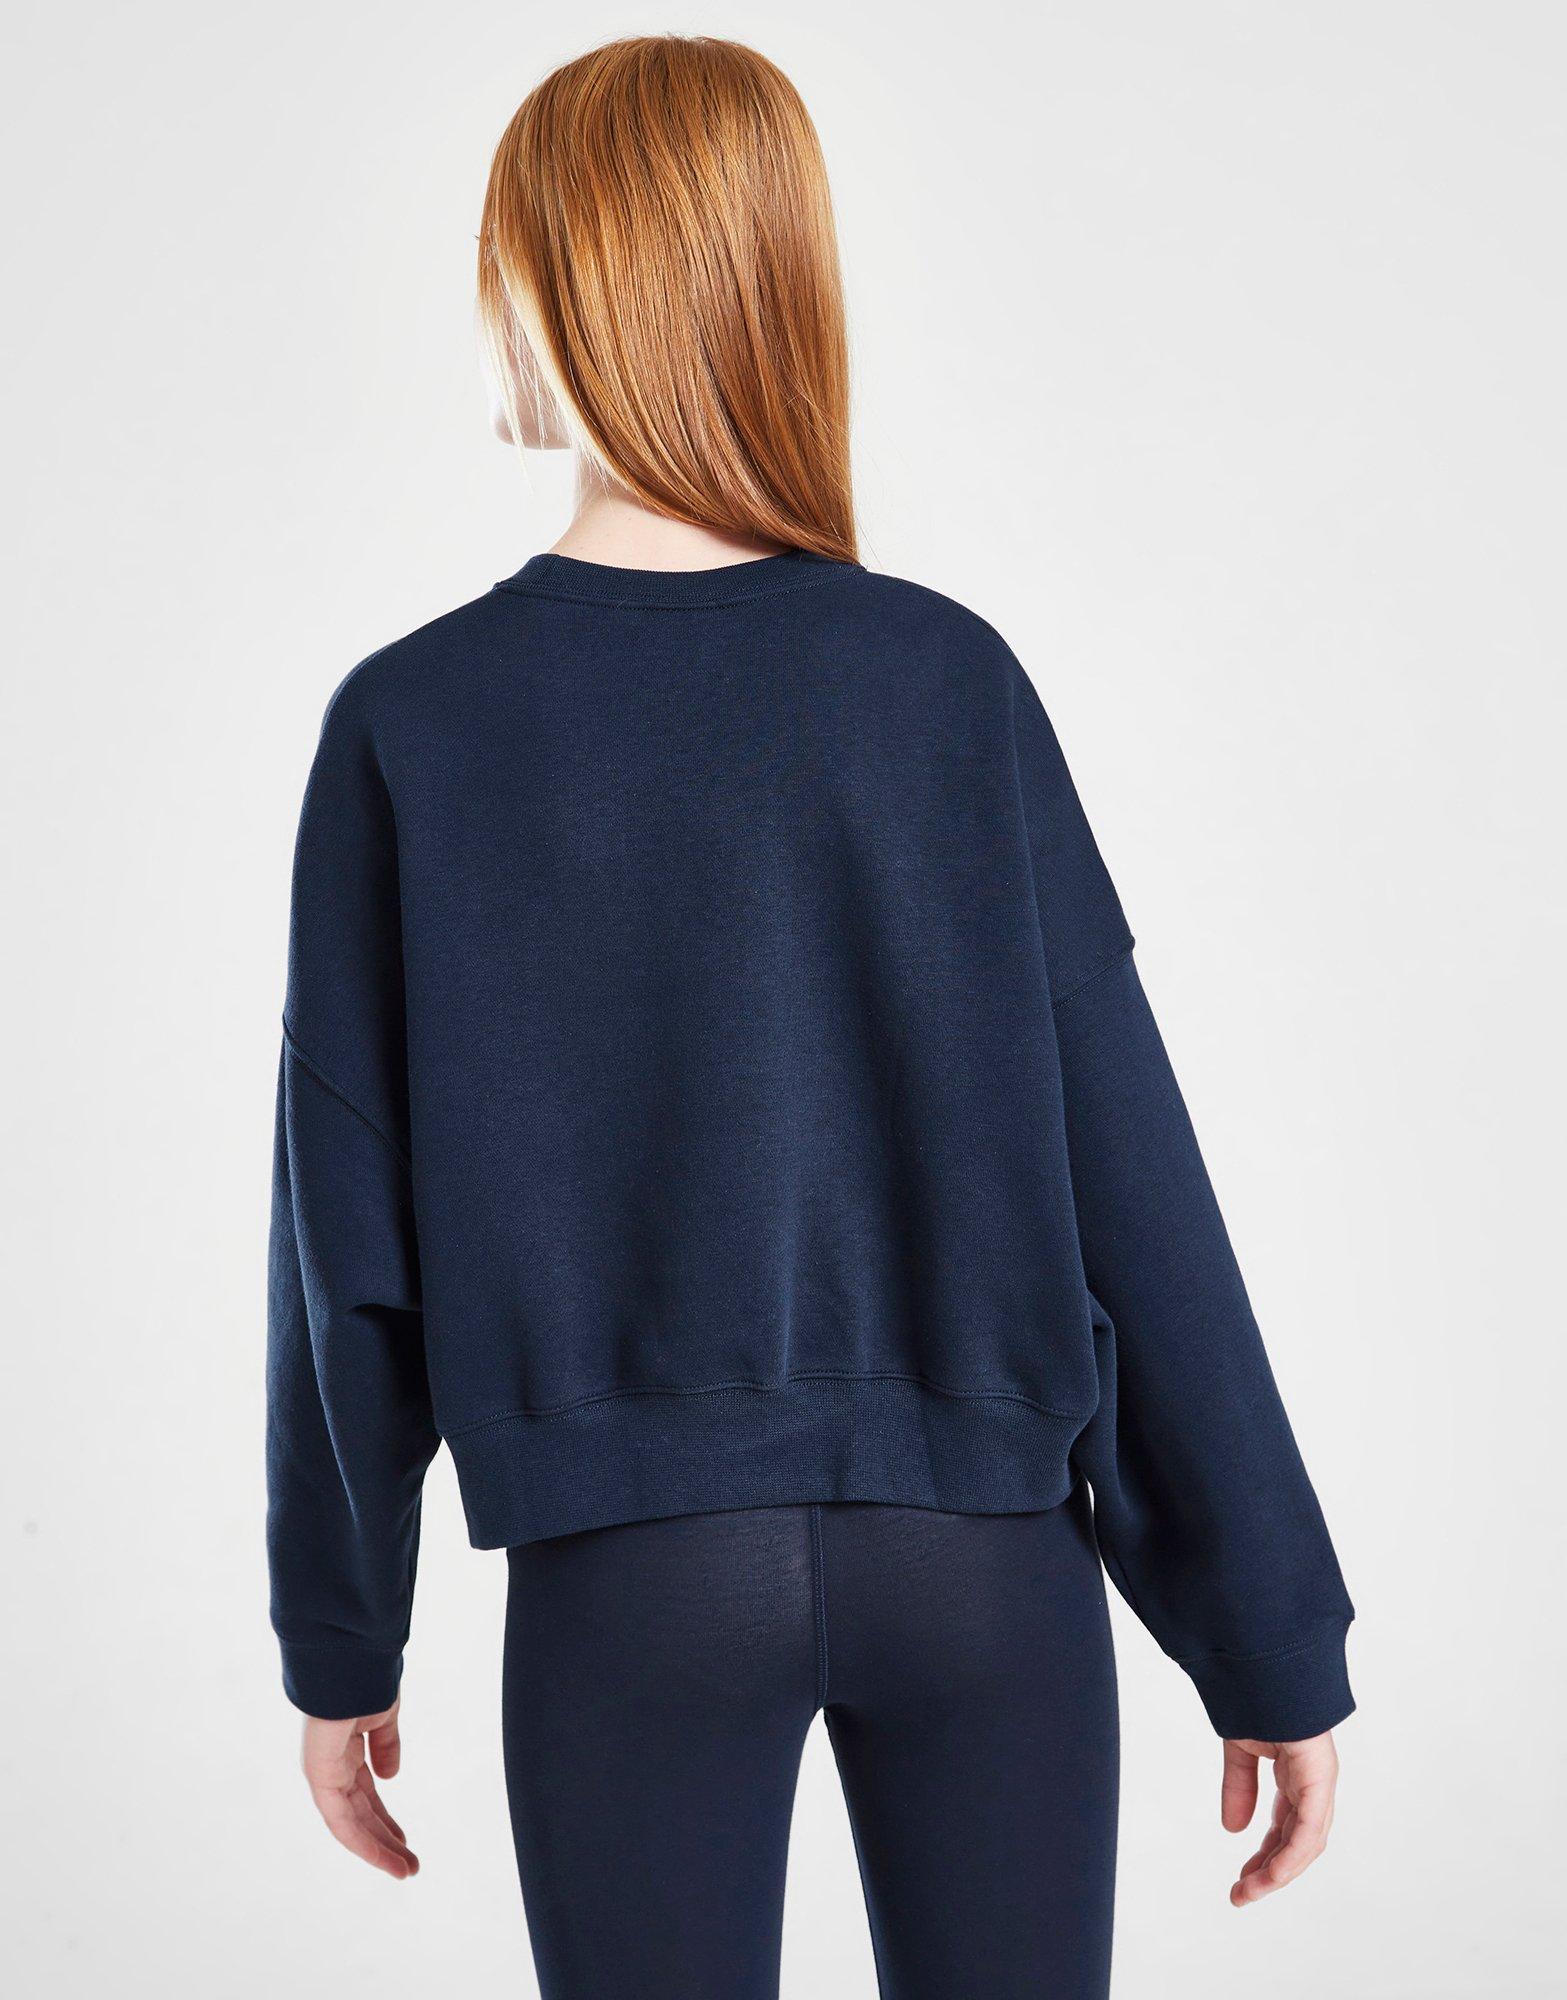 Blue Nike Girls' Trend Fleece Crew Sweatshirt Junior